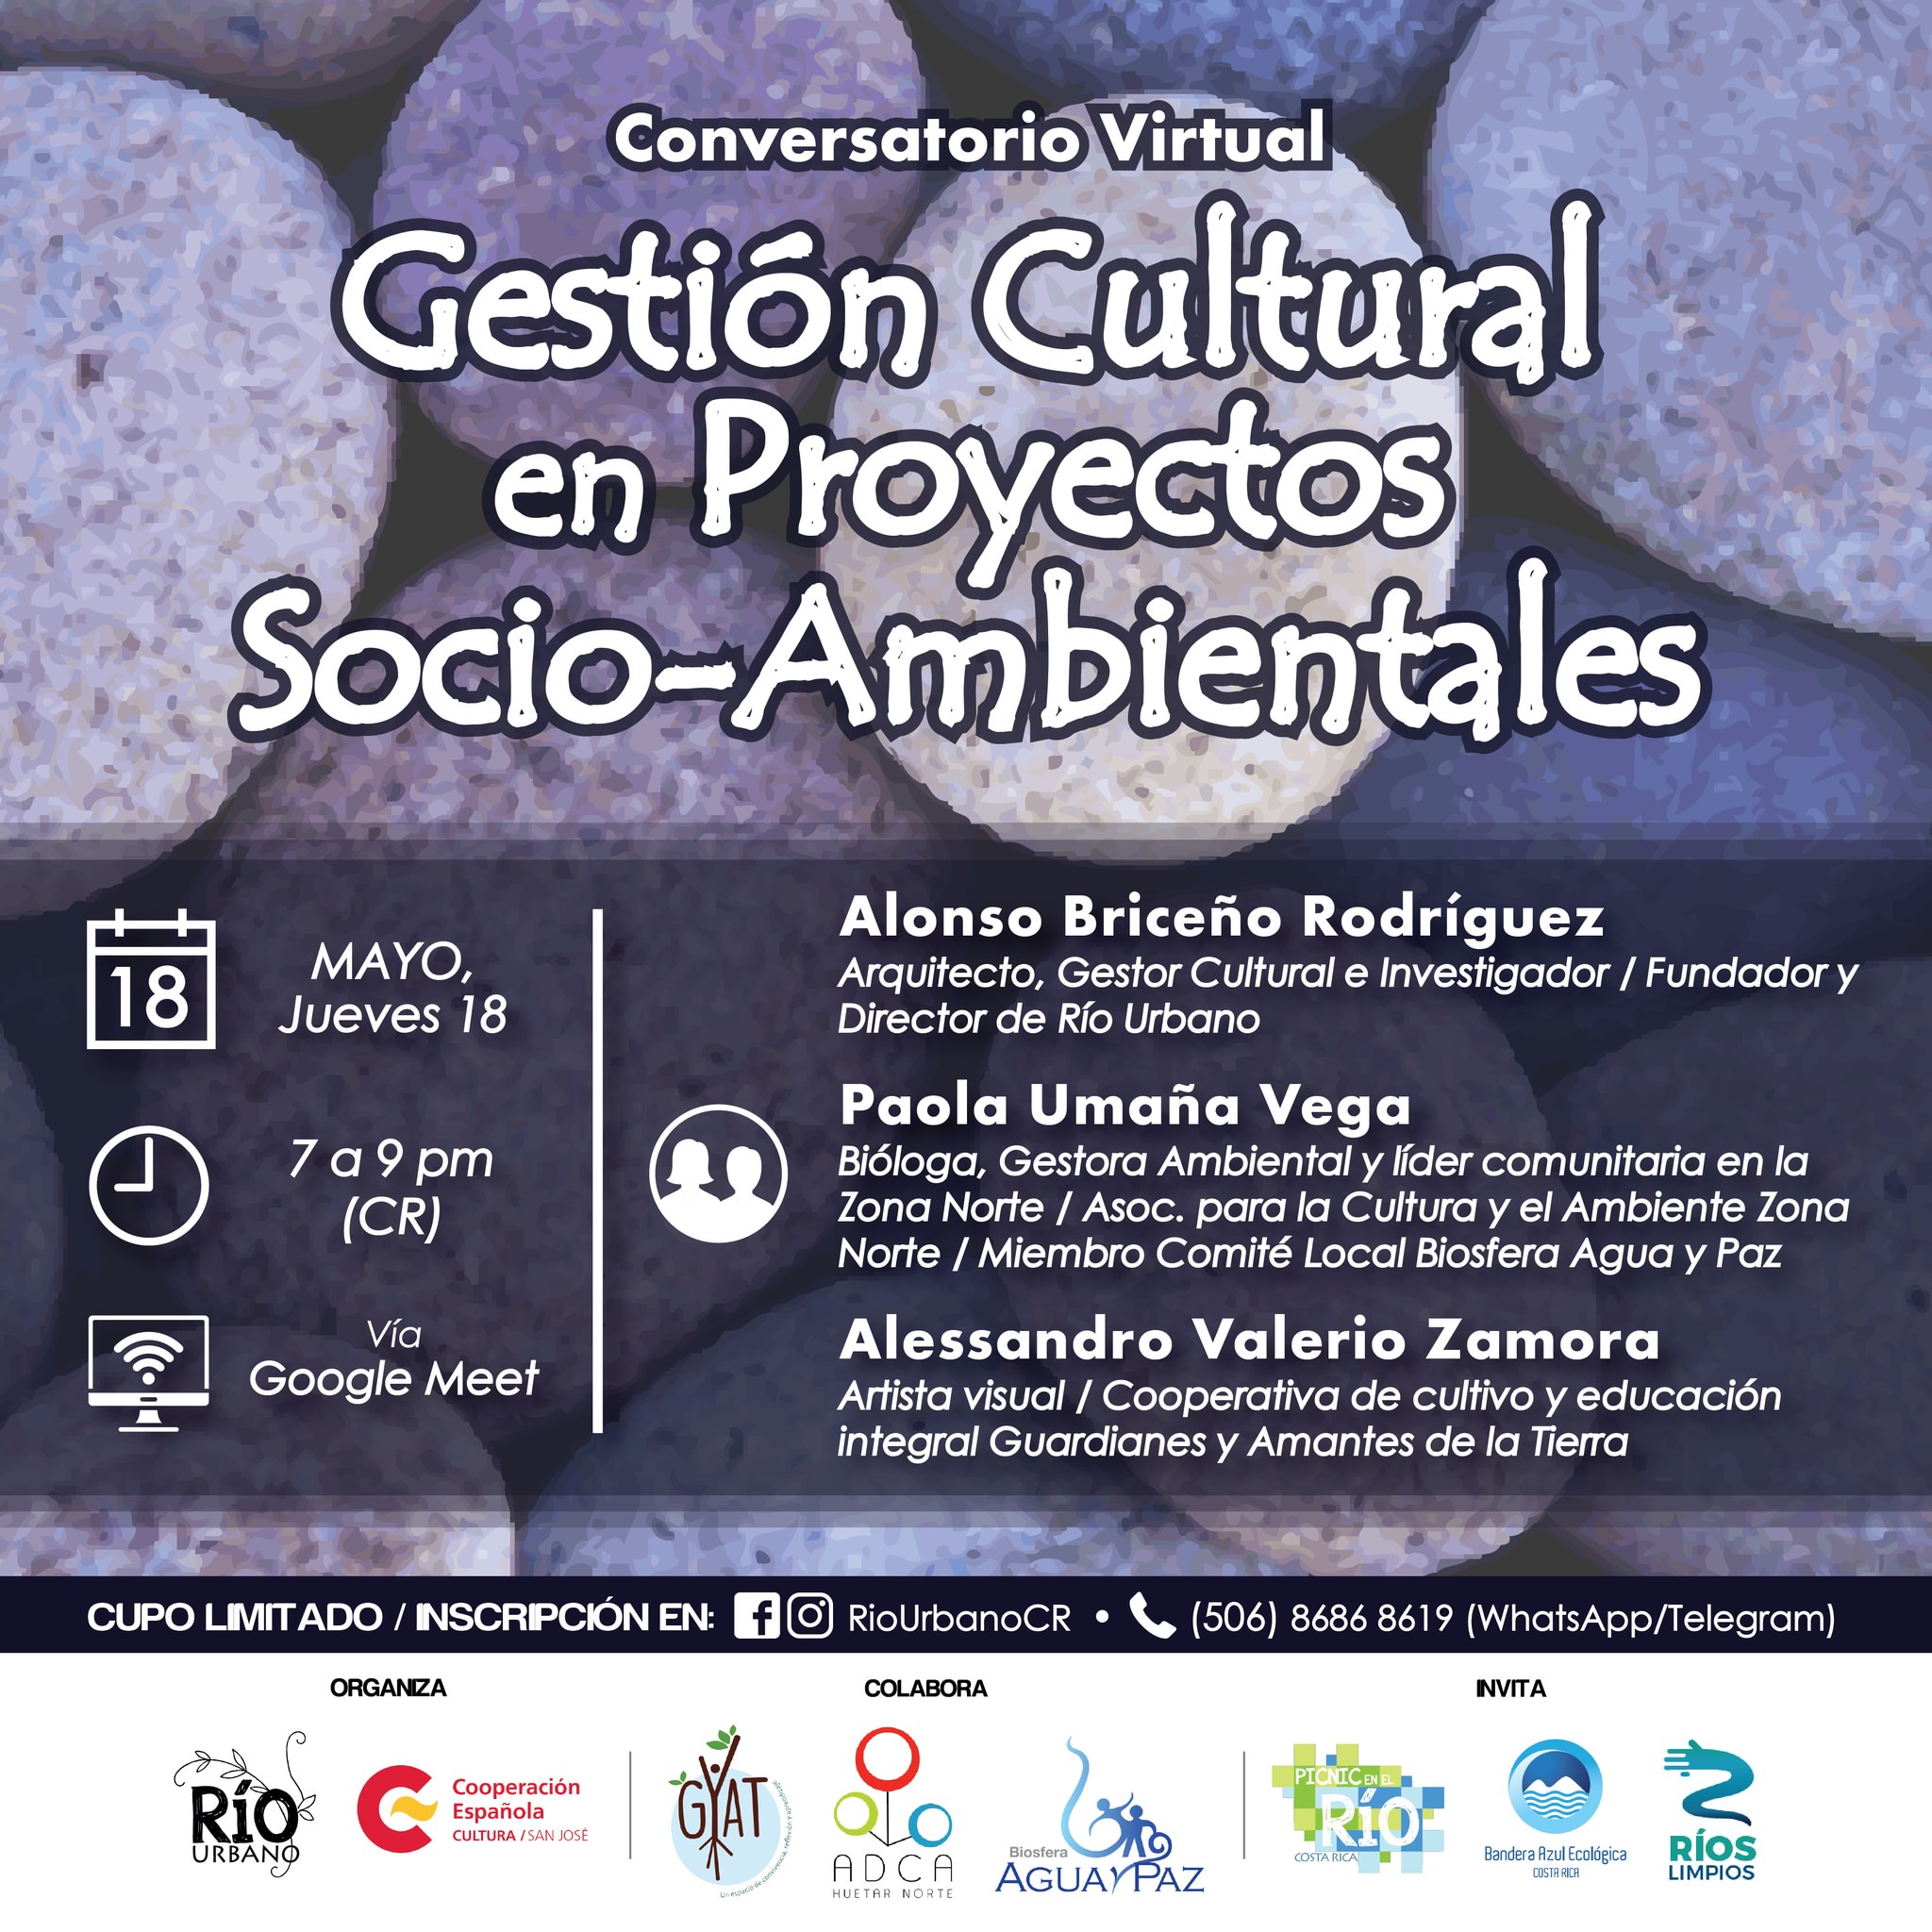 Conversatorio "Gestión Cultural en Proyectos Socio-Ambientales"